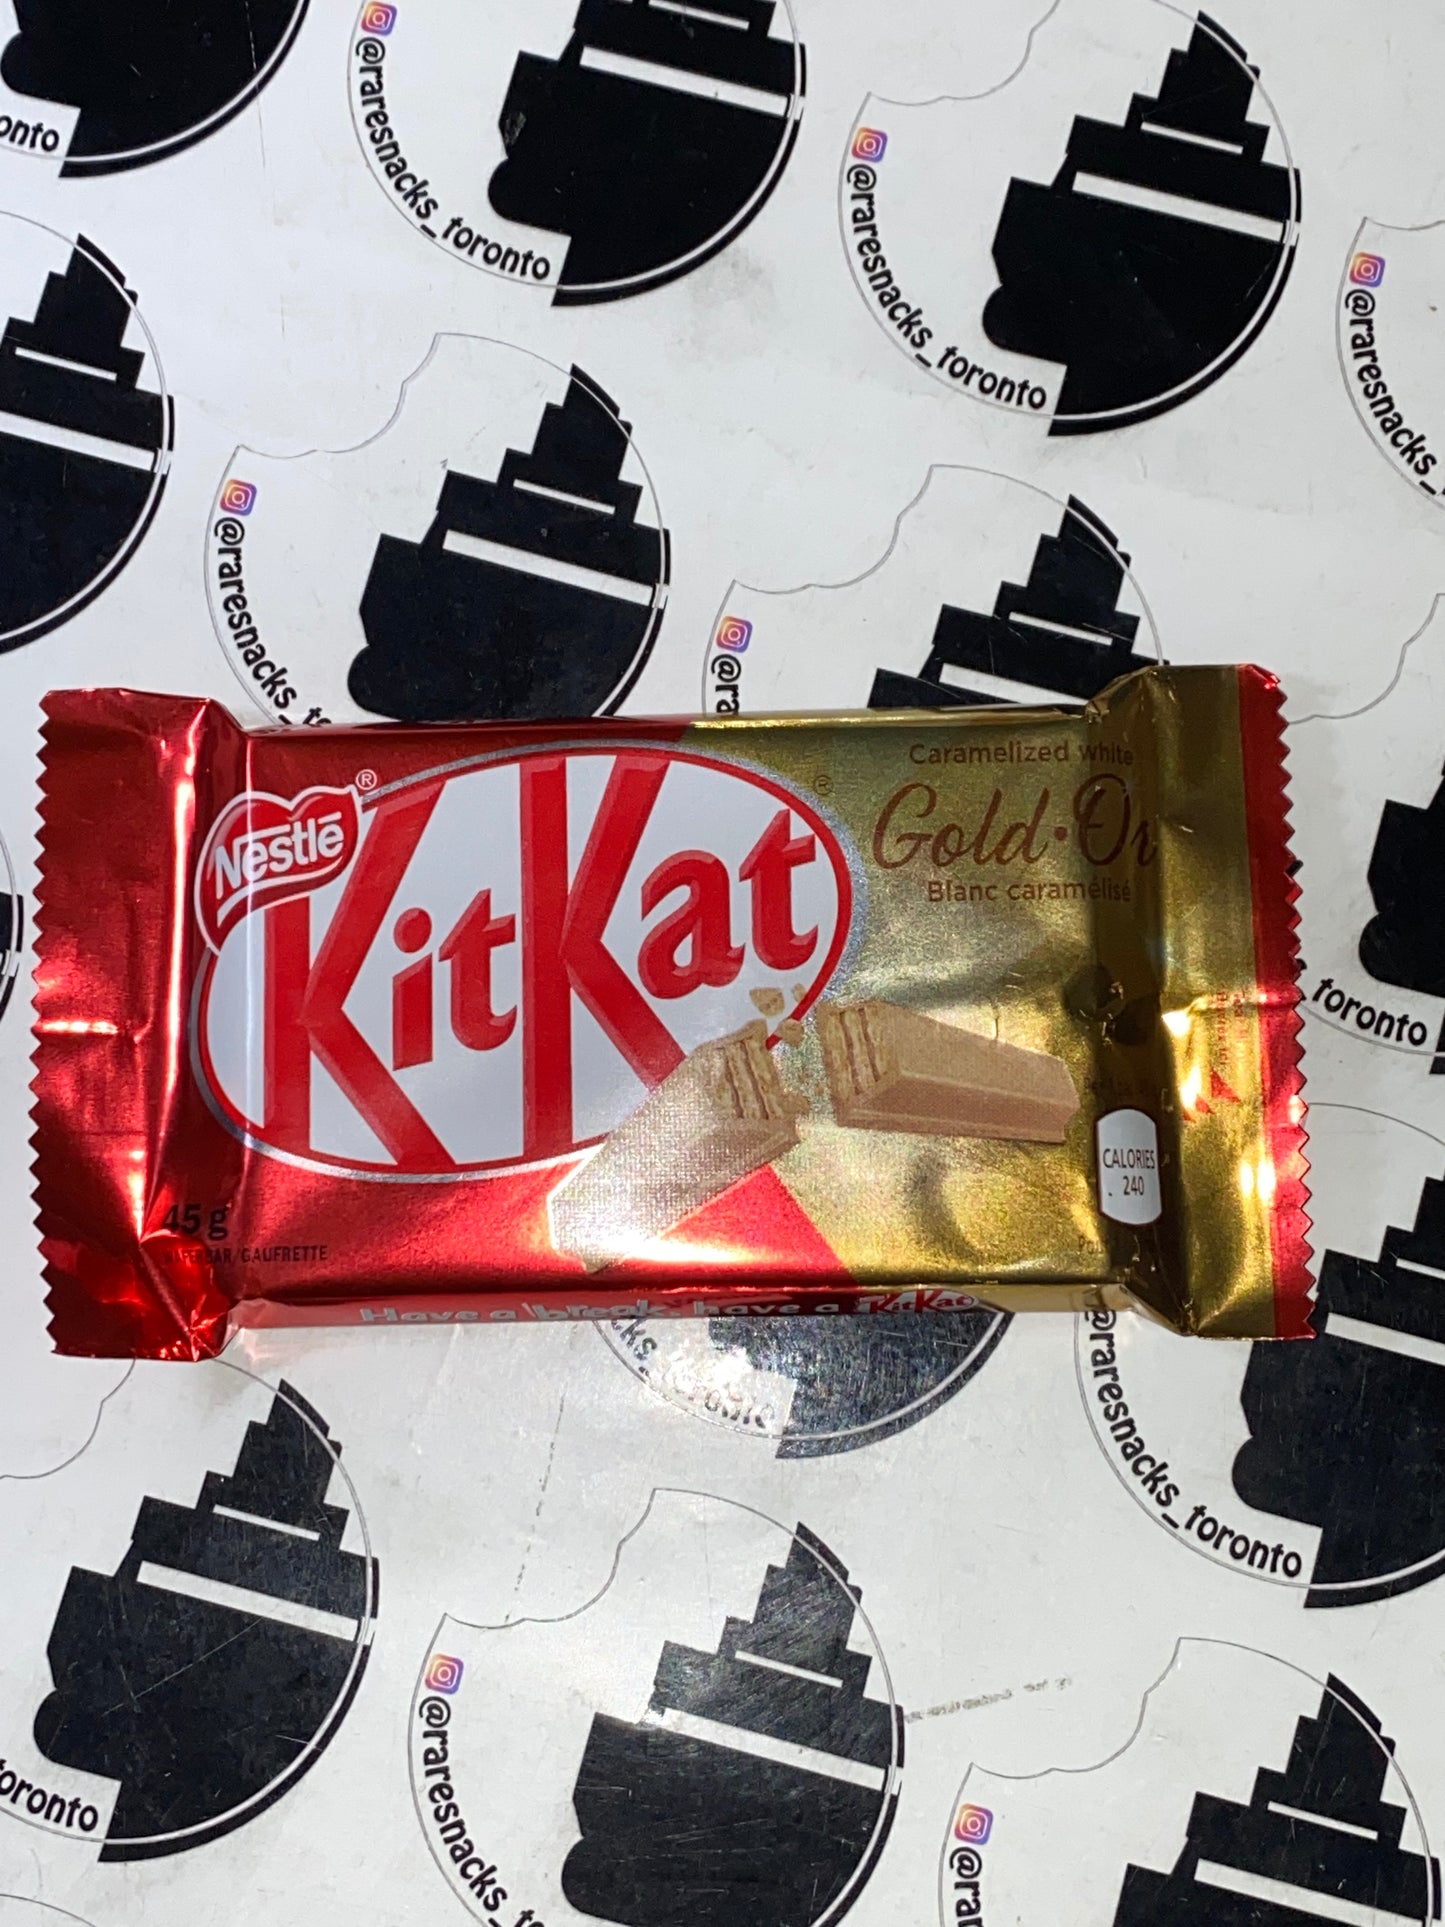 Kit Kat Gold 45g